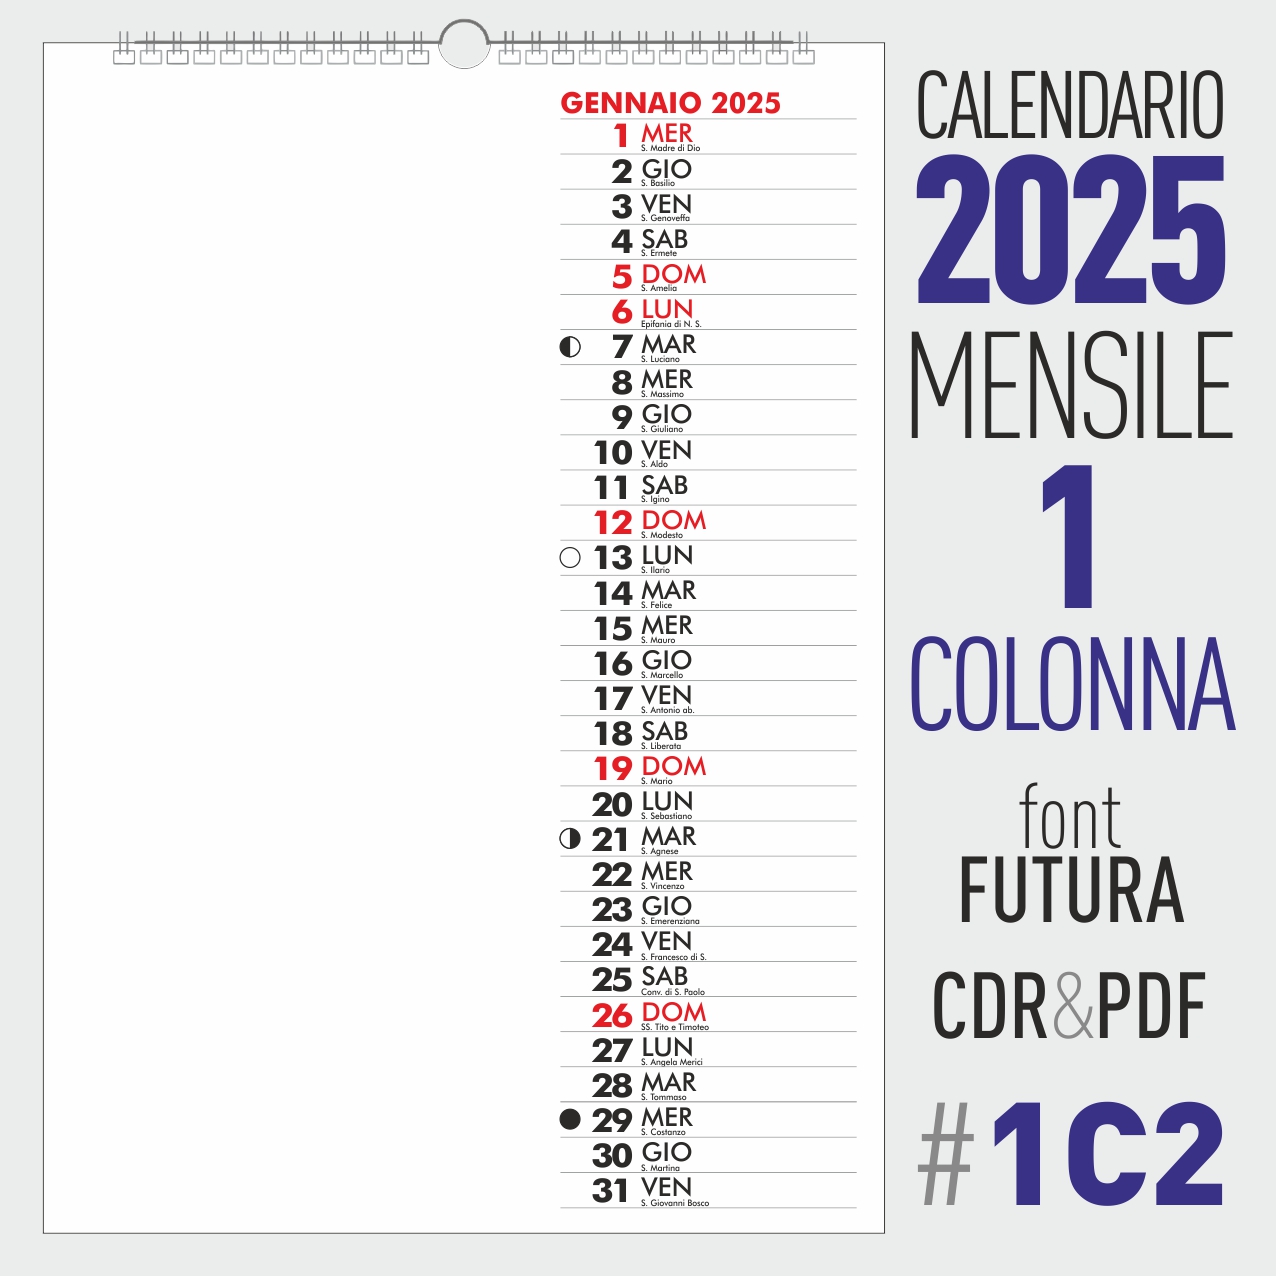 calendario 2025 mensile